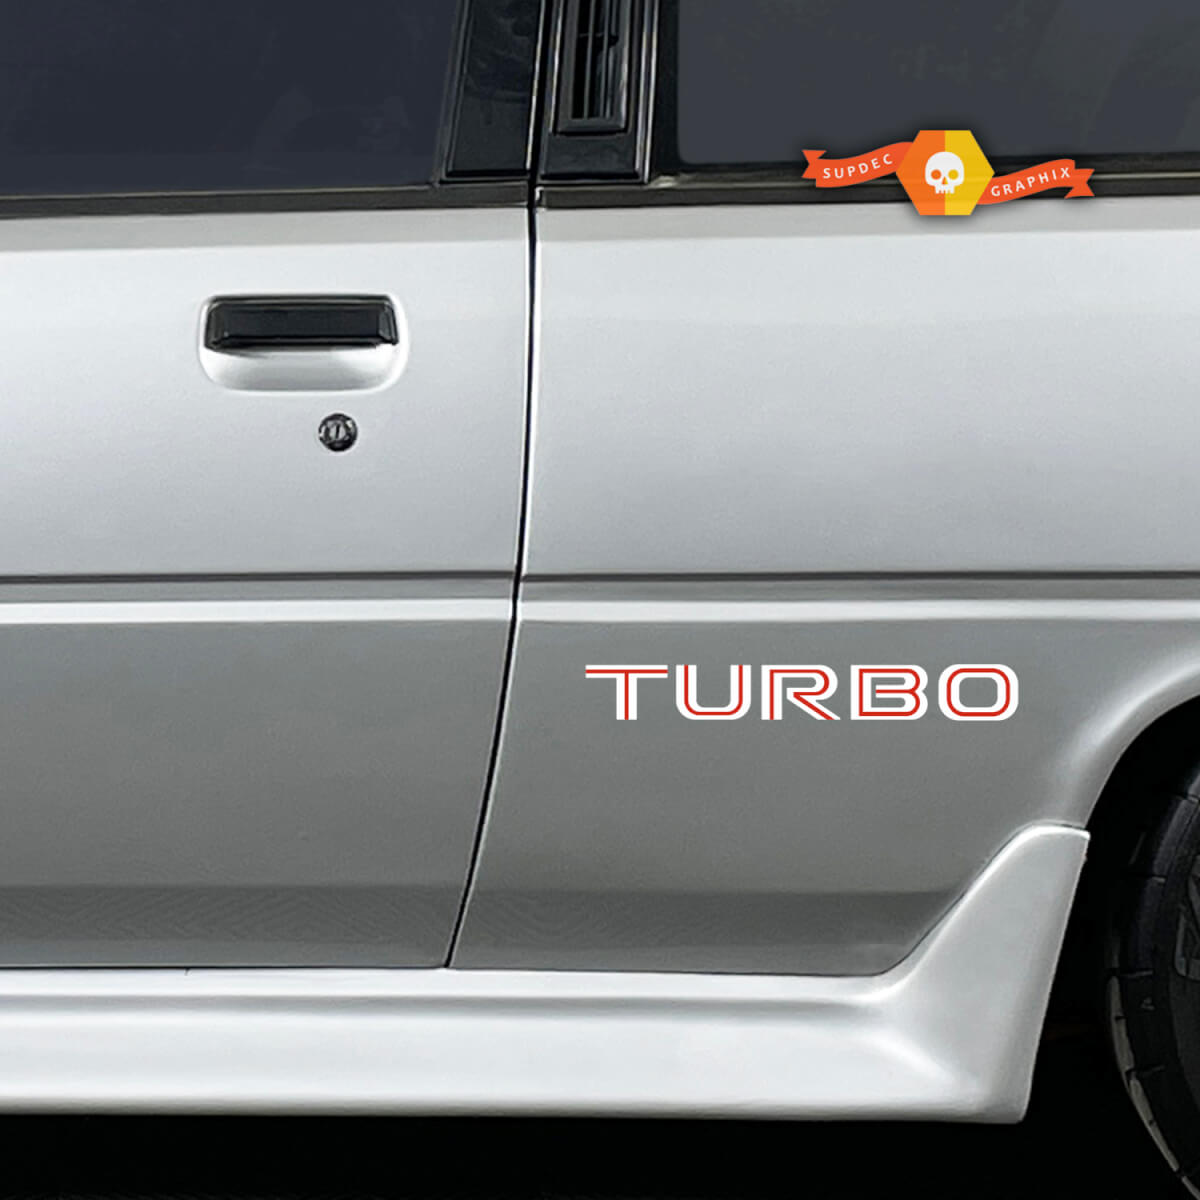 Coppia Mitsubishi cordia turbo laterale il corpo in vinile decalcomanie adesivo grafico 2 colori